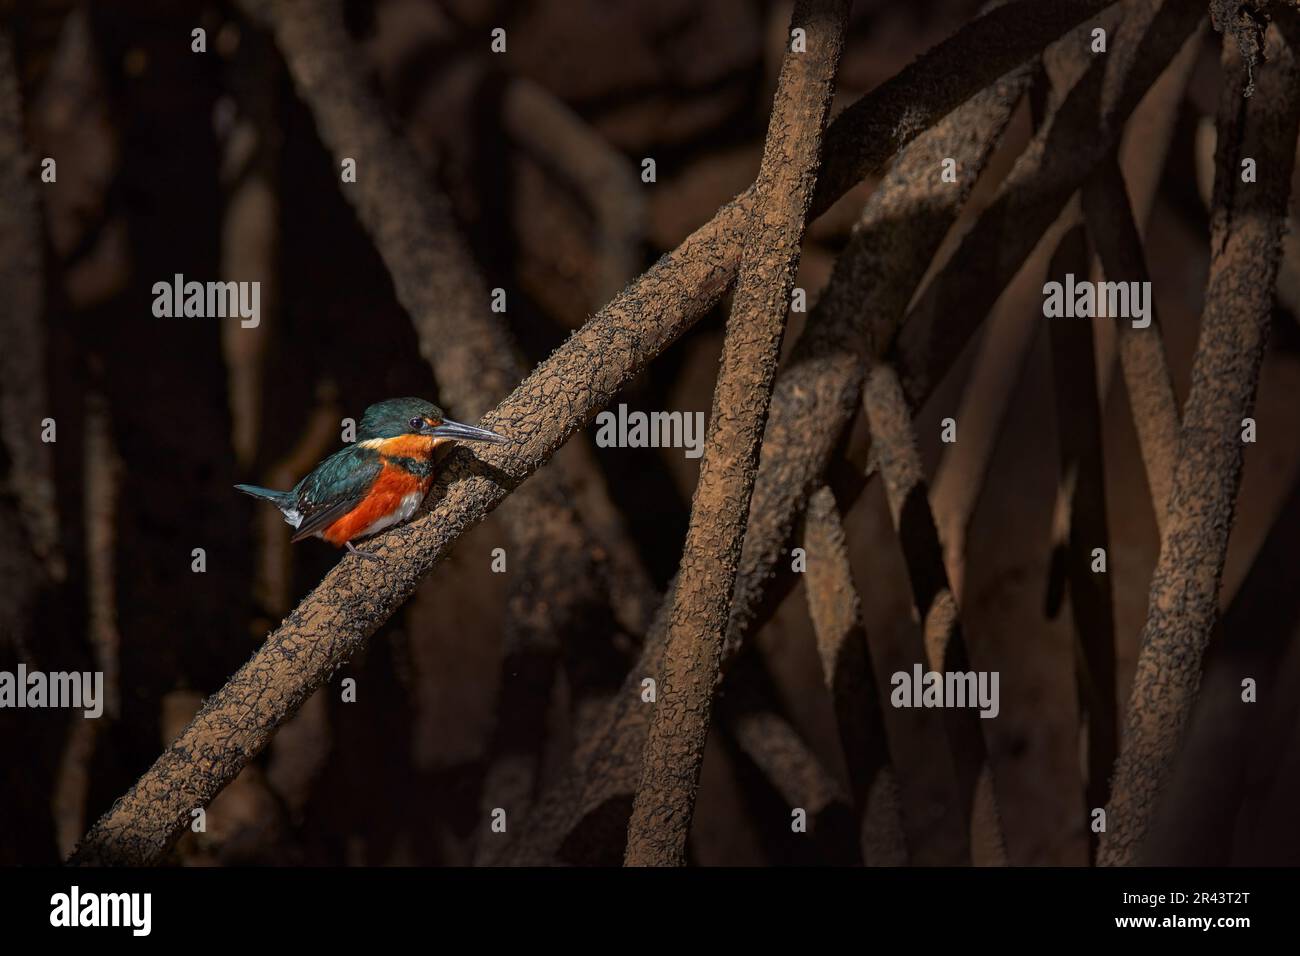 Mexikanische Tierwelt. Amerikanischer Zwergfischer, Chloroceryle aenea, am Wasser. Grüner und orangefarbener Vogel sitzt auf dem grünen Mangrovenzweig. Kingfisher Stockfoto